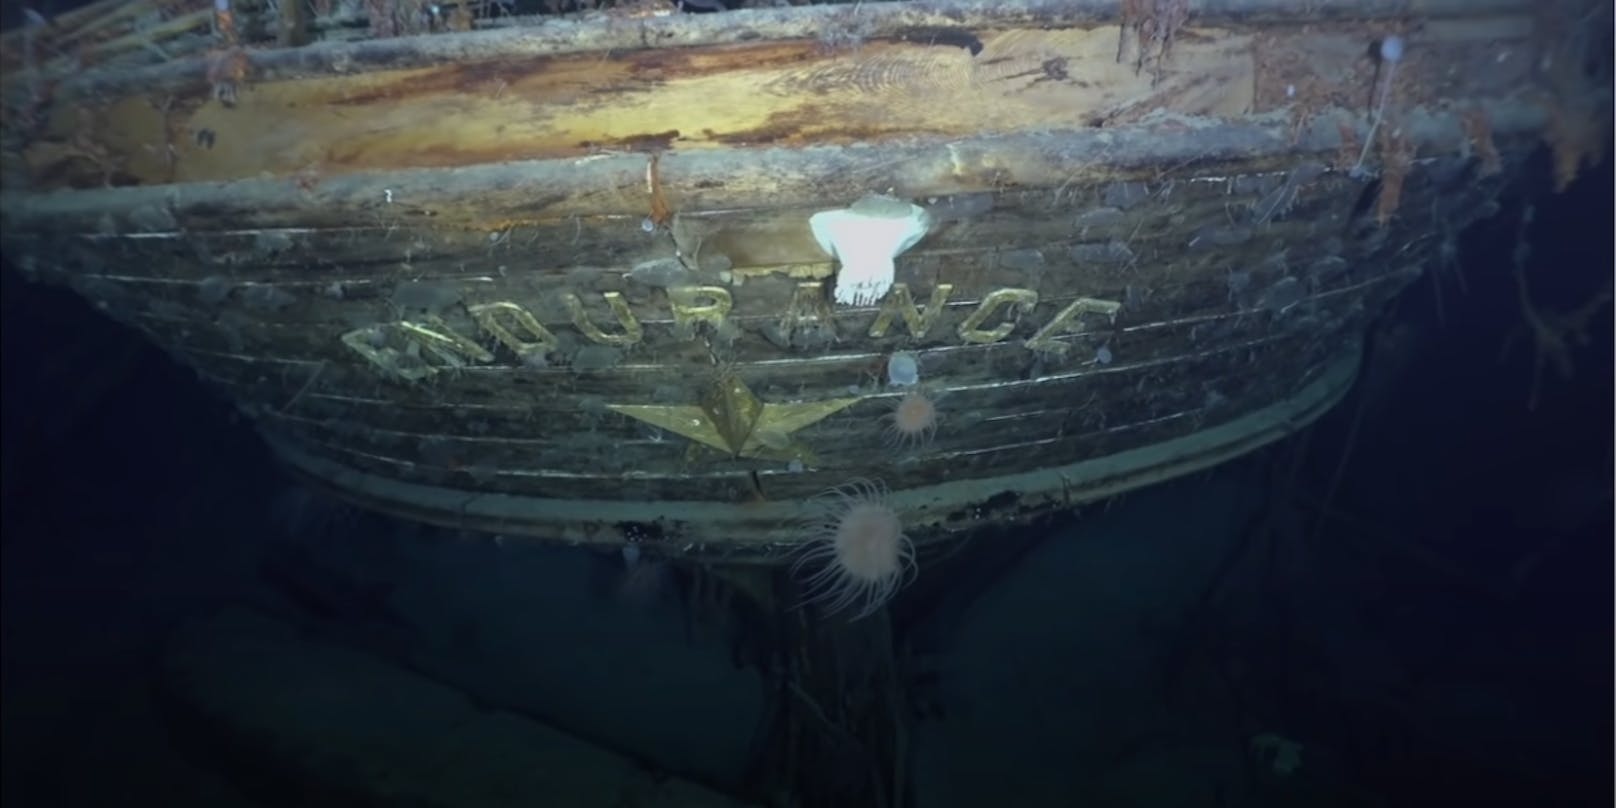 Mit der Hilfe eines Tauchroboters entdeckten Forscher das seit mehr als 100 Jahren verschollene Schiff.